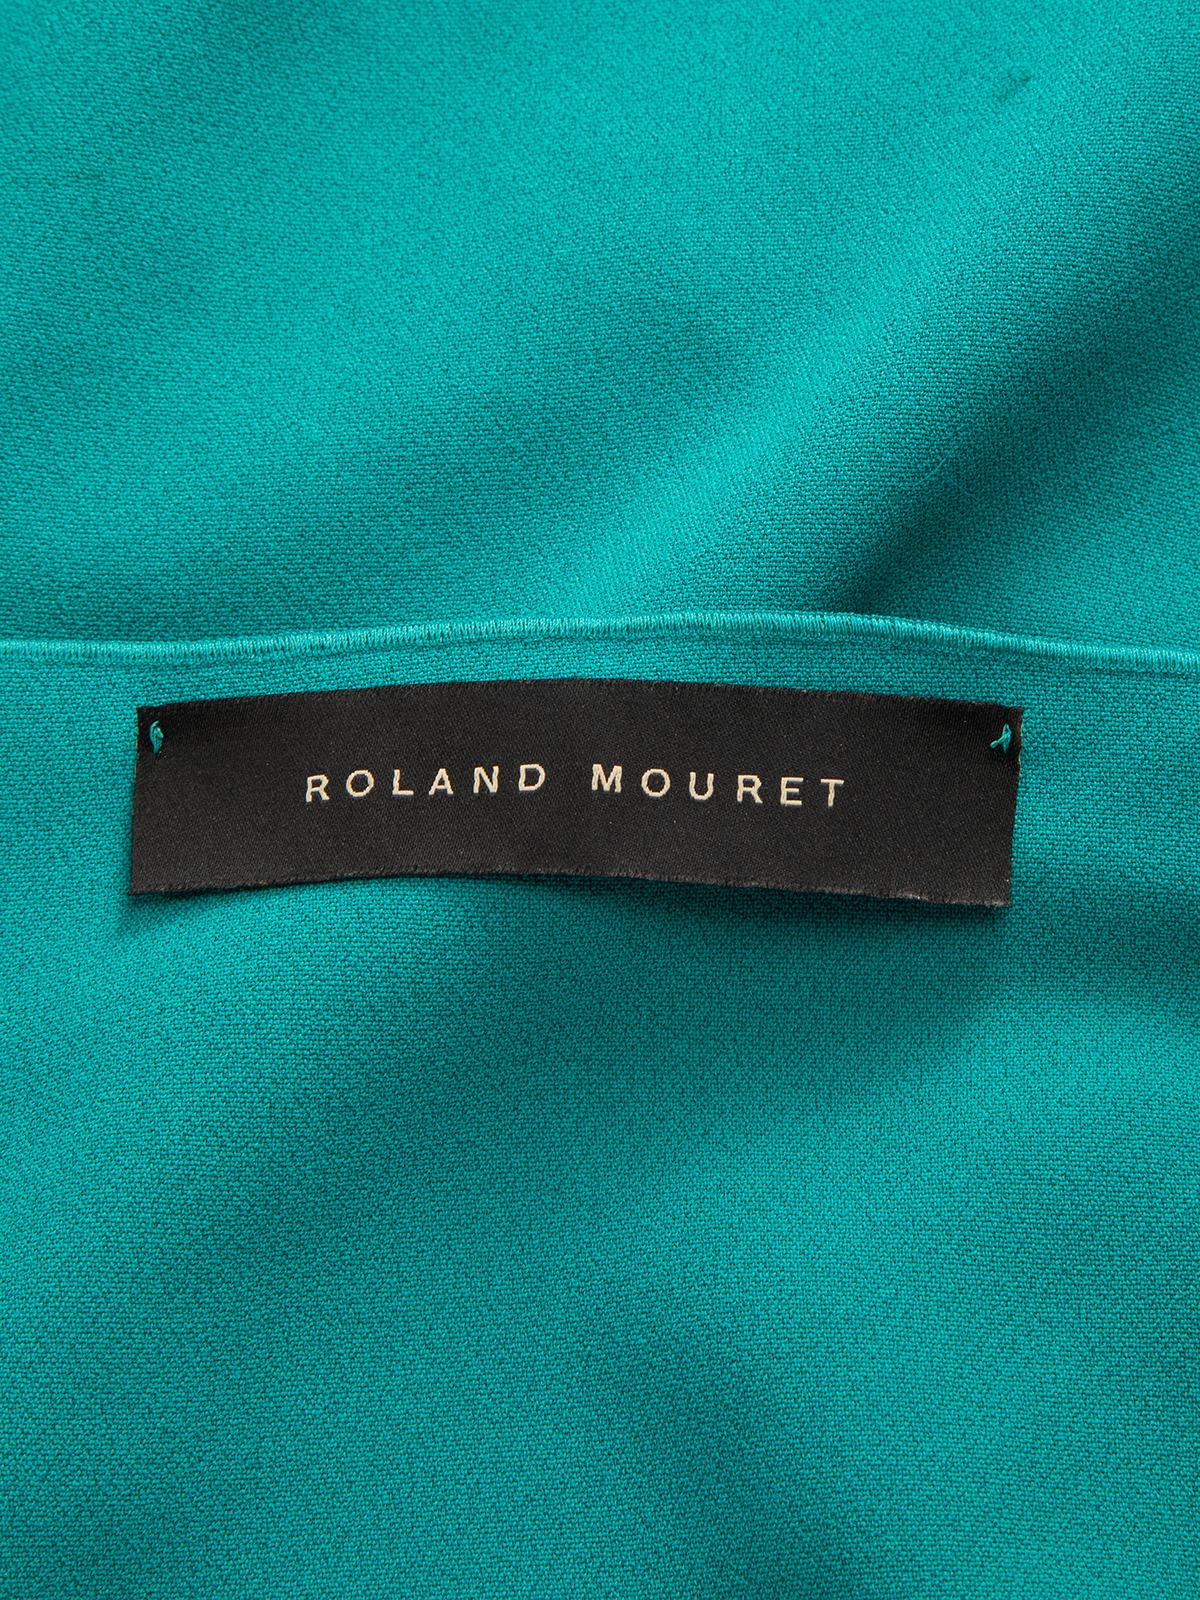 Roland Mouret Women's Asymmetric One Shoulder Mini Dress For Sale 2